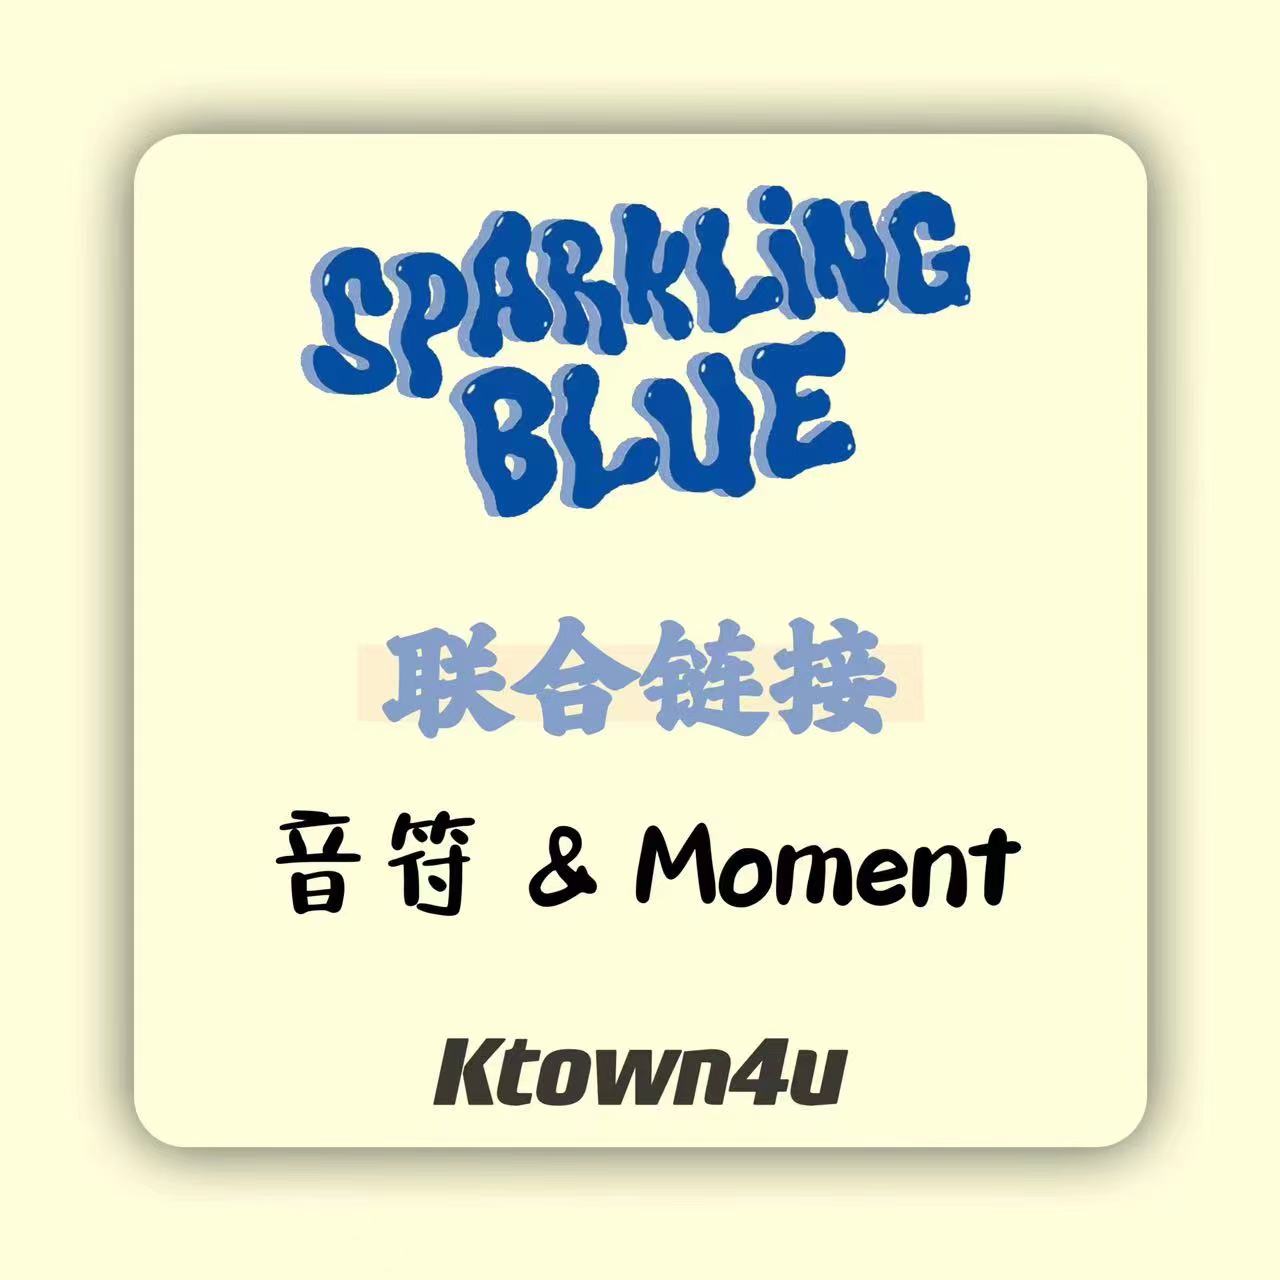 [全款 裸专] [Ktown4u特典赠送] [2CD 套装] TWS - 迷你1辑 [Sparkling Blue] (Sparkling Ver. + Lucky Ver.)_两站联合